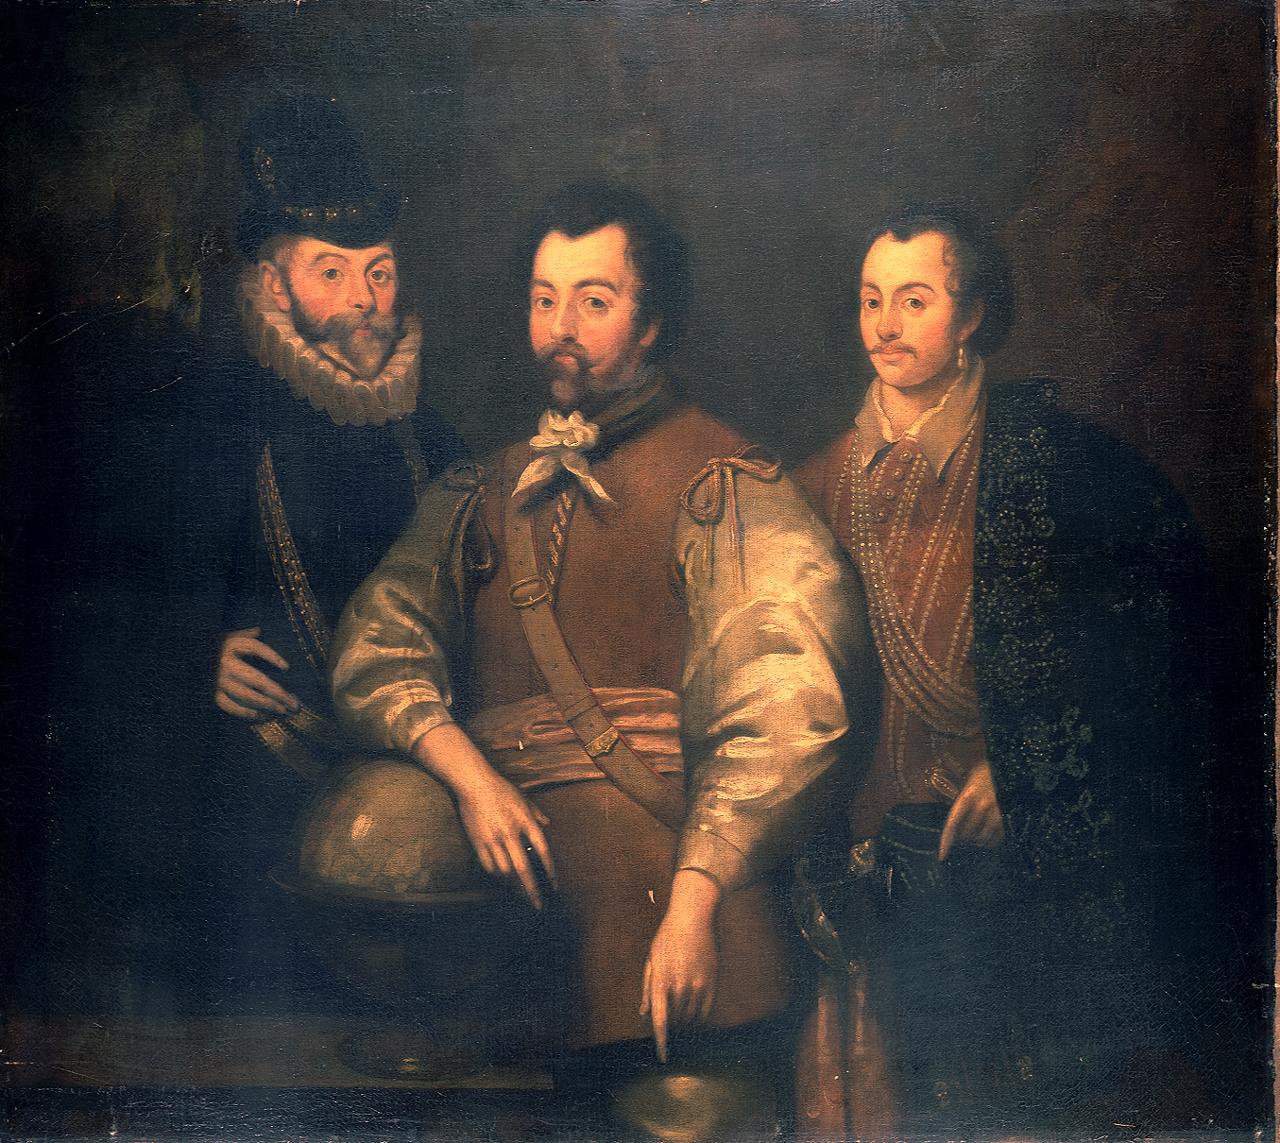 Thomas Cavendish (1560-92), Sir Francis Drake (1540-96) and Sir John Hawkins (1532-95)